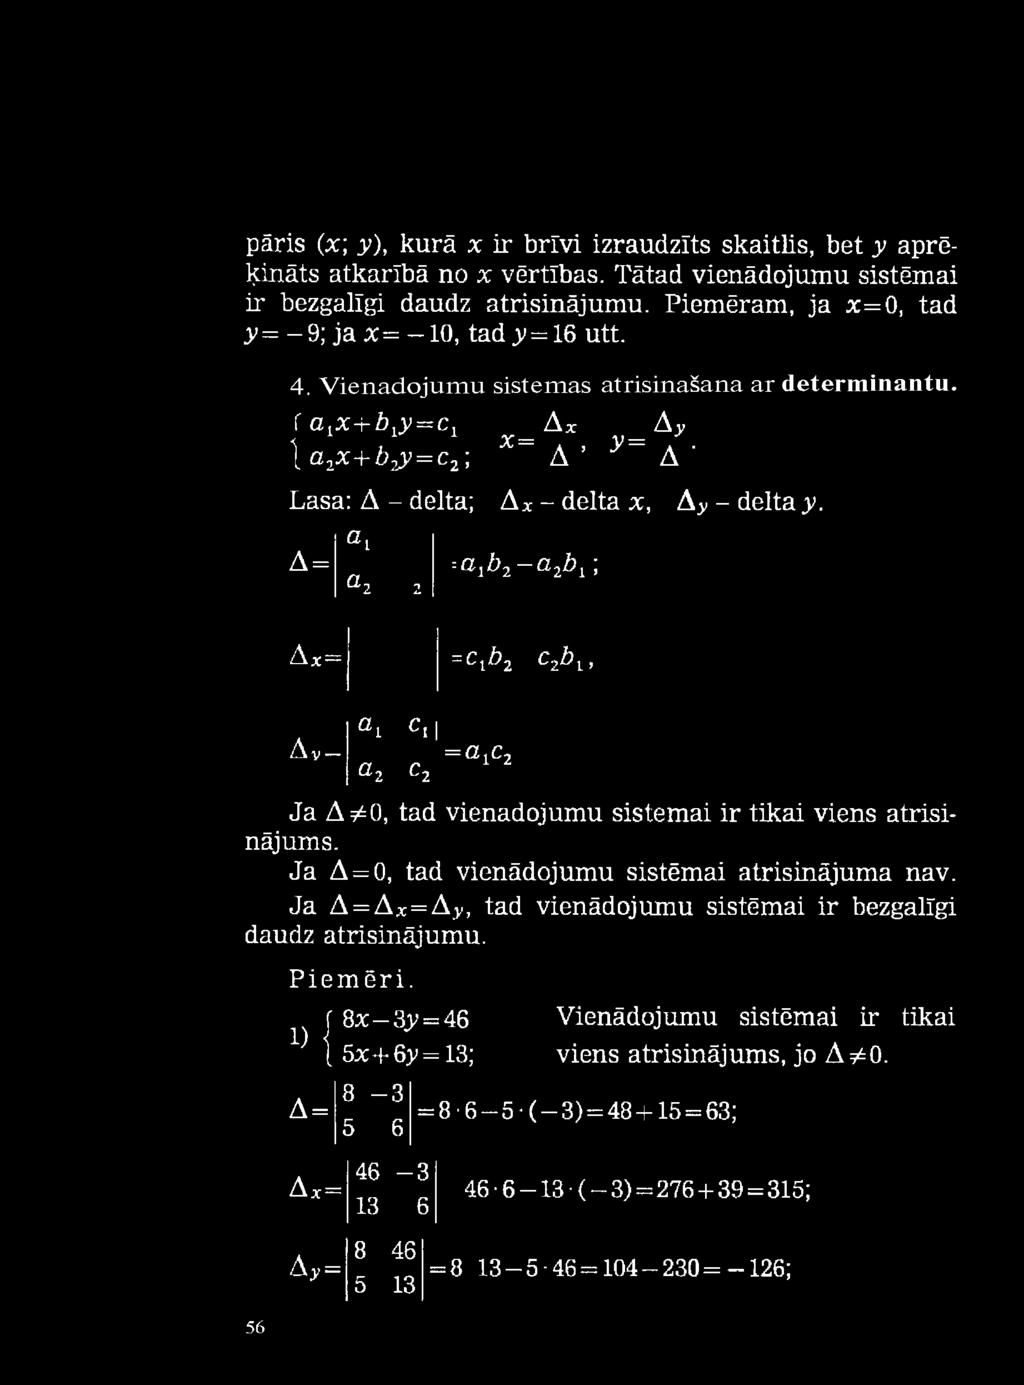 ; A *= =Cļb2 c%bi > A v a i ge2 C, =«ic 2 c2 Ja A^O, tad vienādojumu sistēmai ir tikai viens atrisinājums. Ja A = 0, tad vienādojumu sistēmai atrisinājuma nav. Ja A = A*=A>.